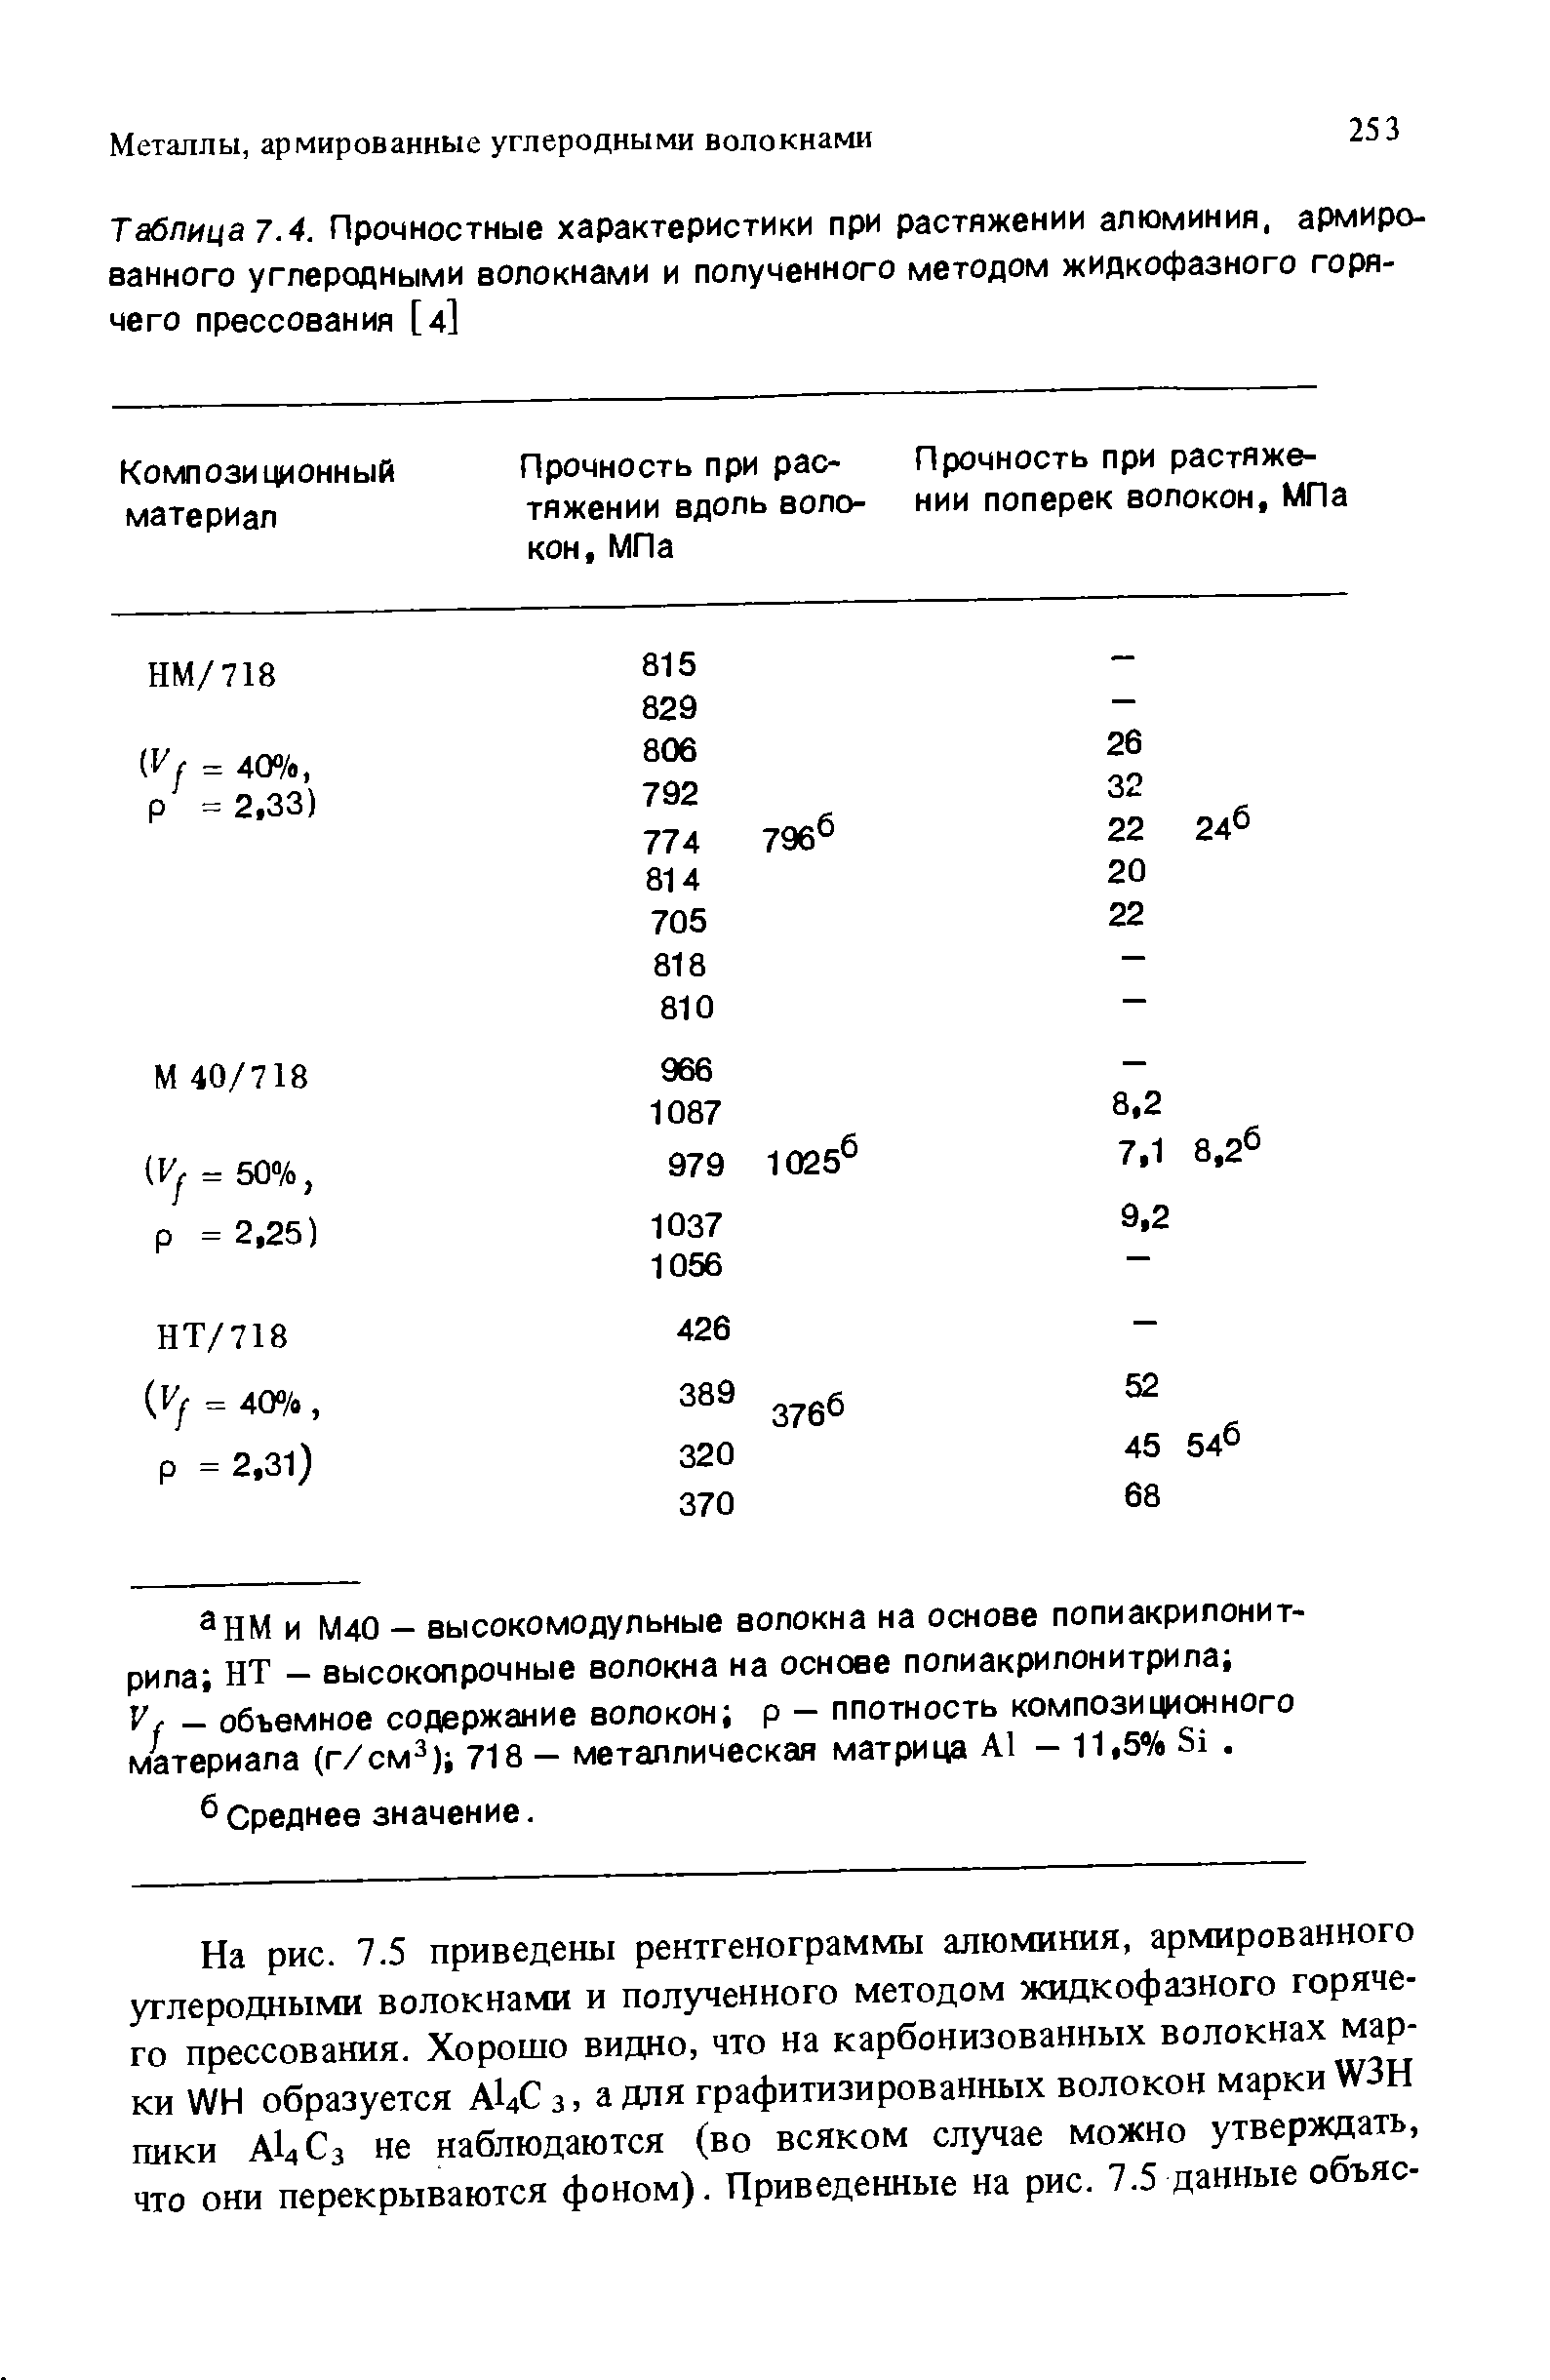 Таблица .4. <a href="/info/46891">Прочностные характеристики</a> при растяжении алюминия, <a href="/info/280005">армированного углеродными волокнами</a> и <a href="/info/473555">полученного методом</a> жидкофазного горячего прессования [4]
